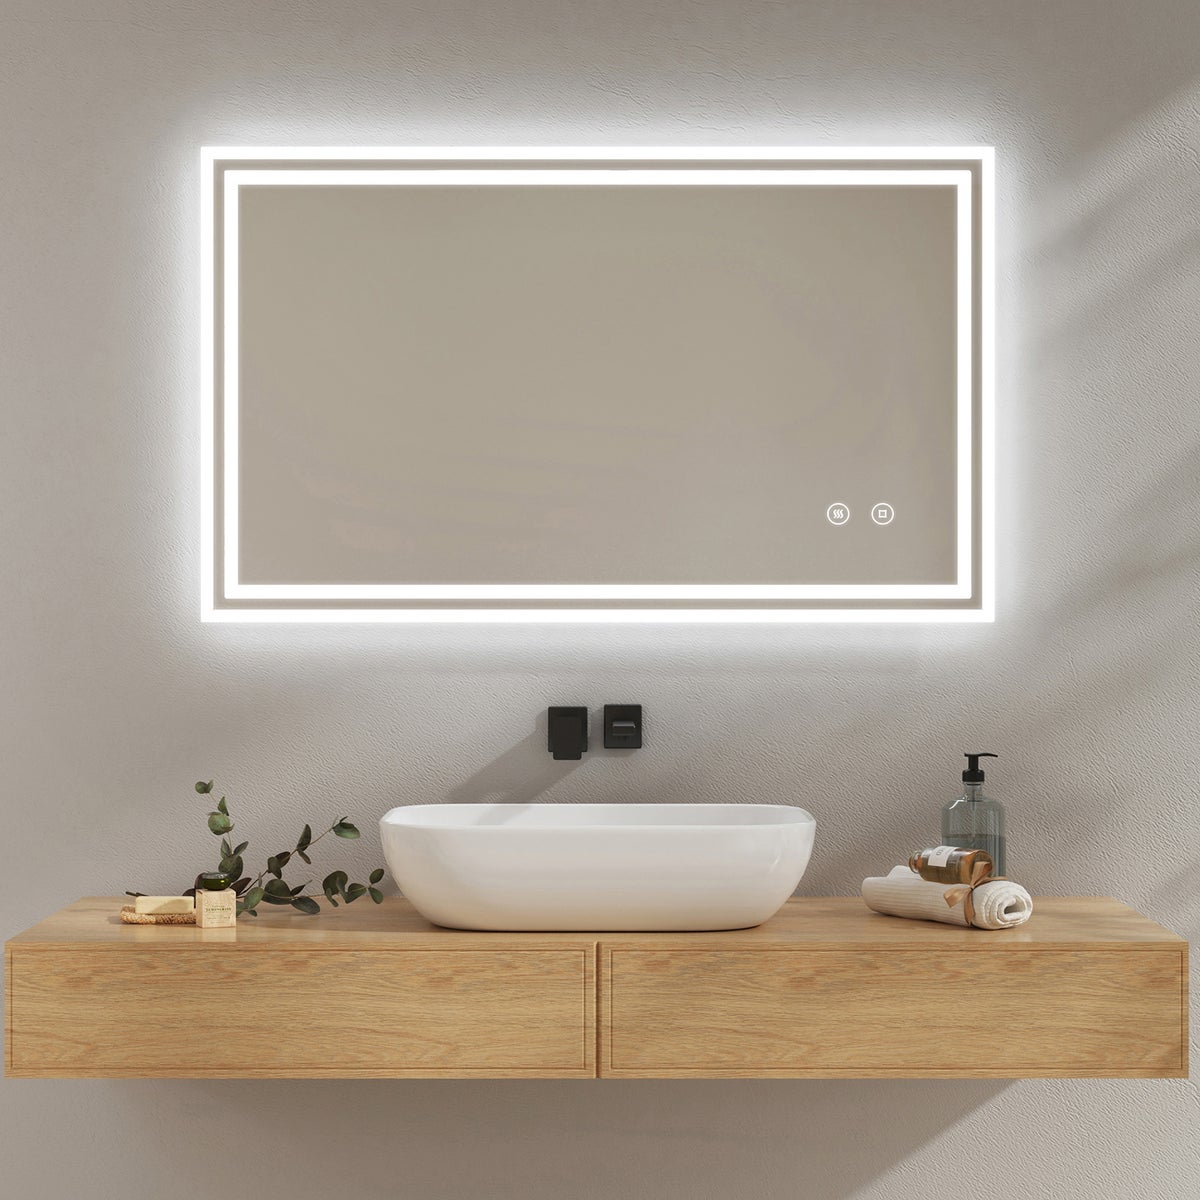 EMKE Badspiegel mit Touch 6500K LED-Beleuchtung eckig, Beschlagfrei, Helligkeit Einstellbar, Memory-Funktion, Horizontal&Vertical 100 x 60 cm